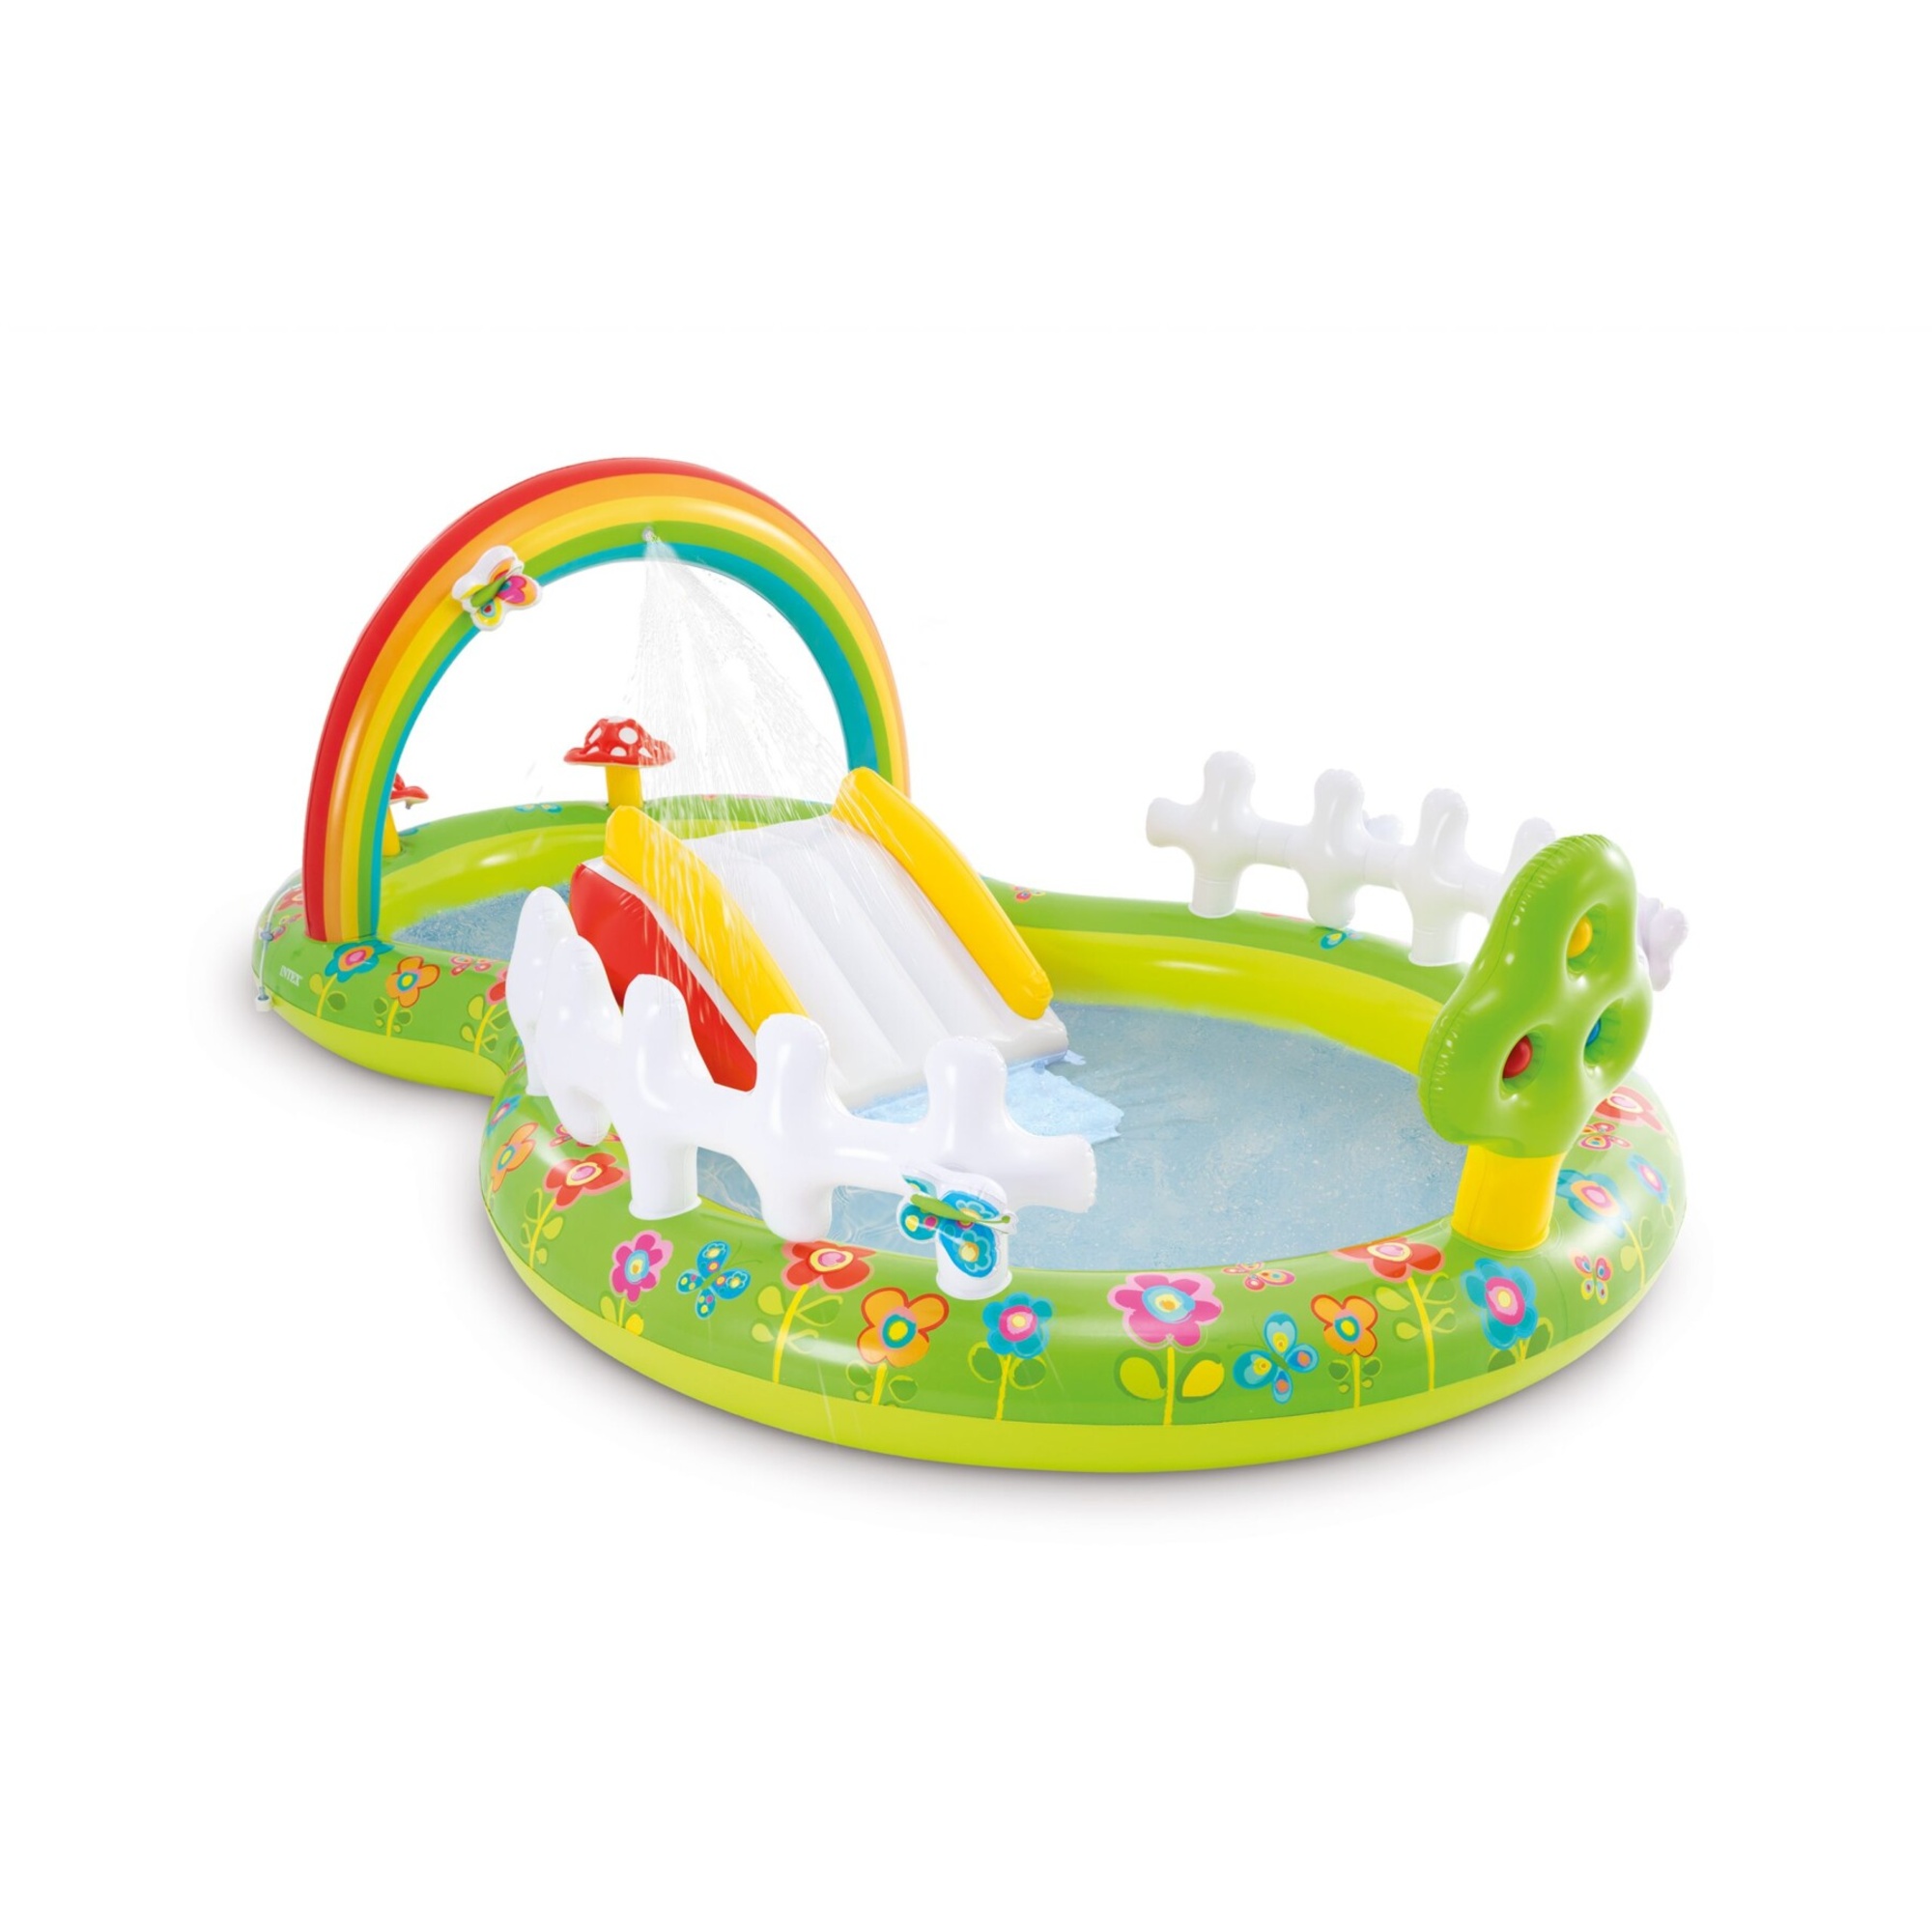 Play center garden 290x180x104 cm - divertimento e immaginazione per bambini - Intex